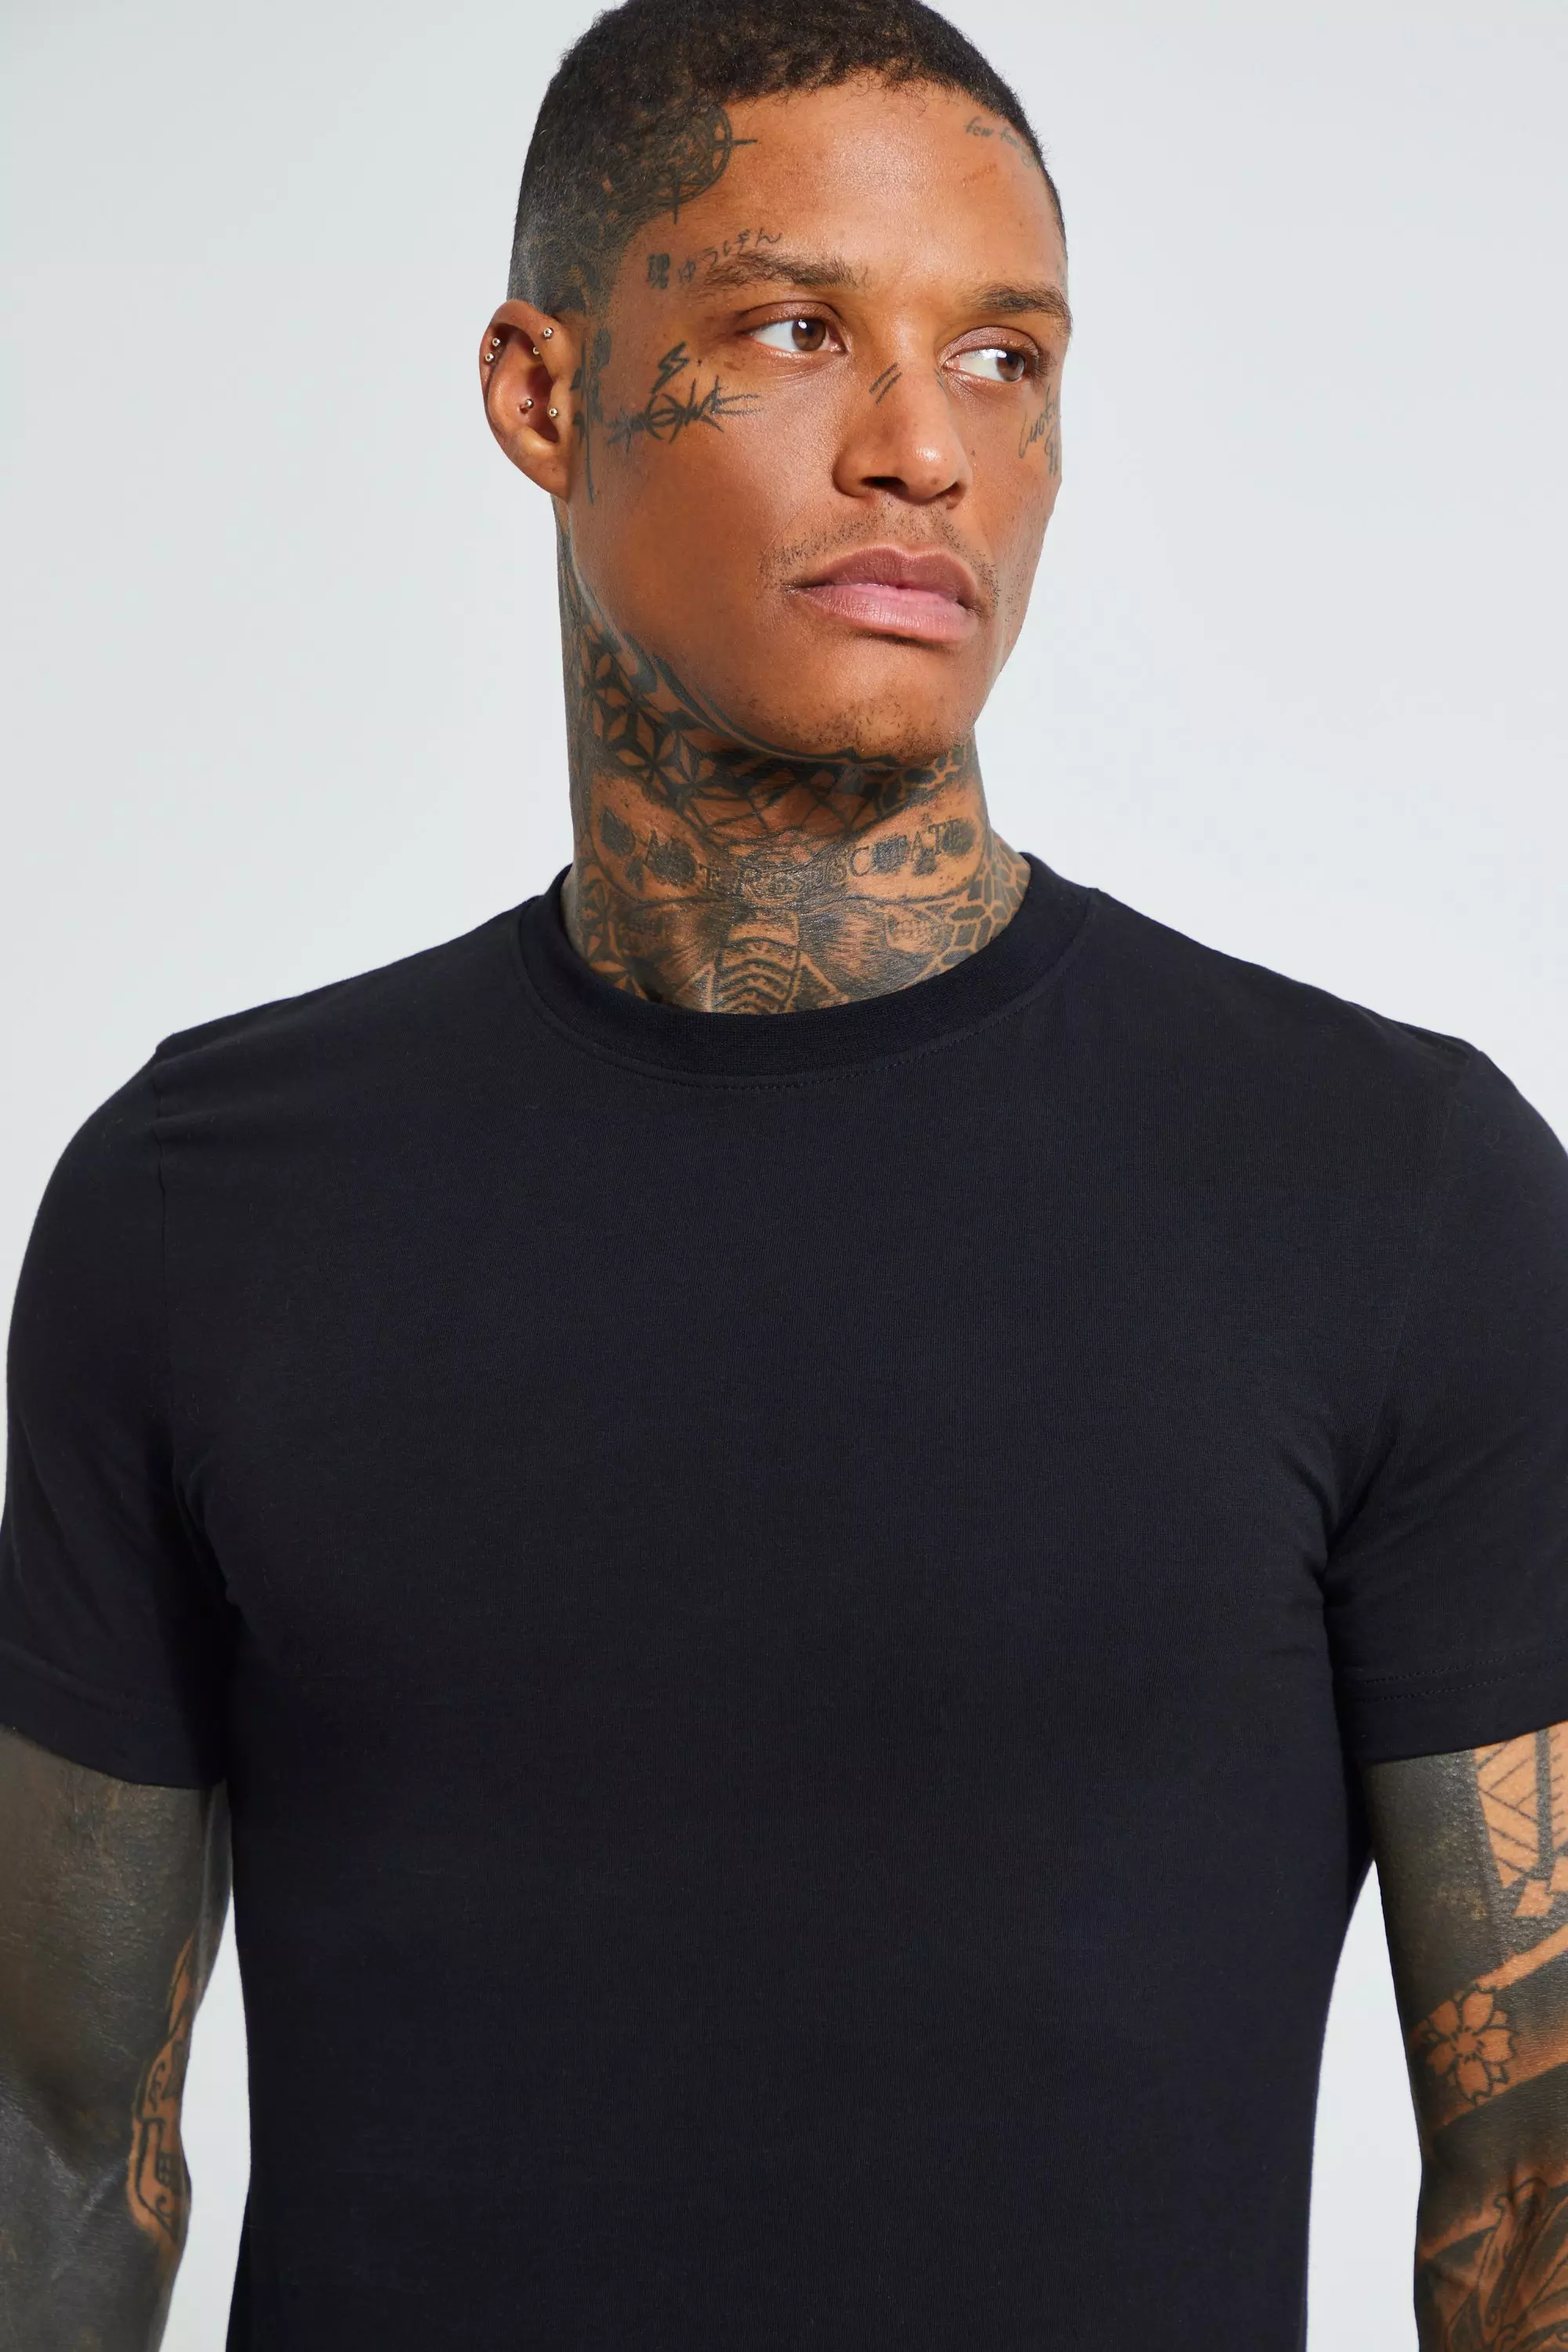 Crew-neck Muscle Fit T-shirt - Black - Men